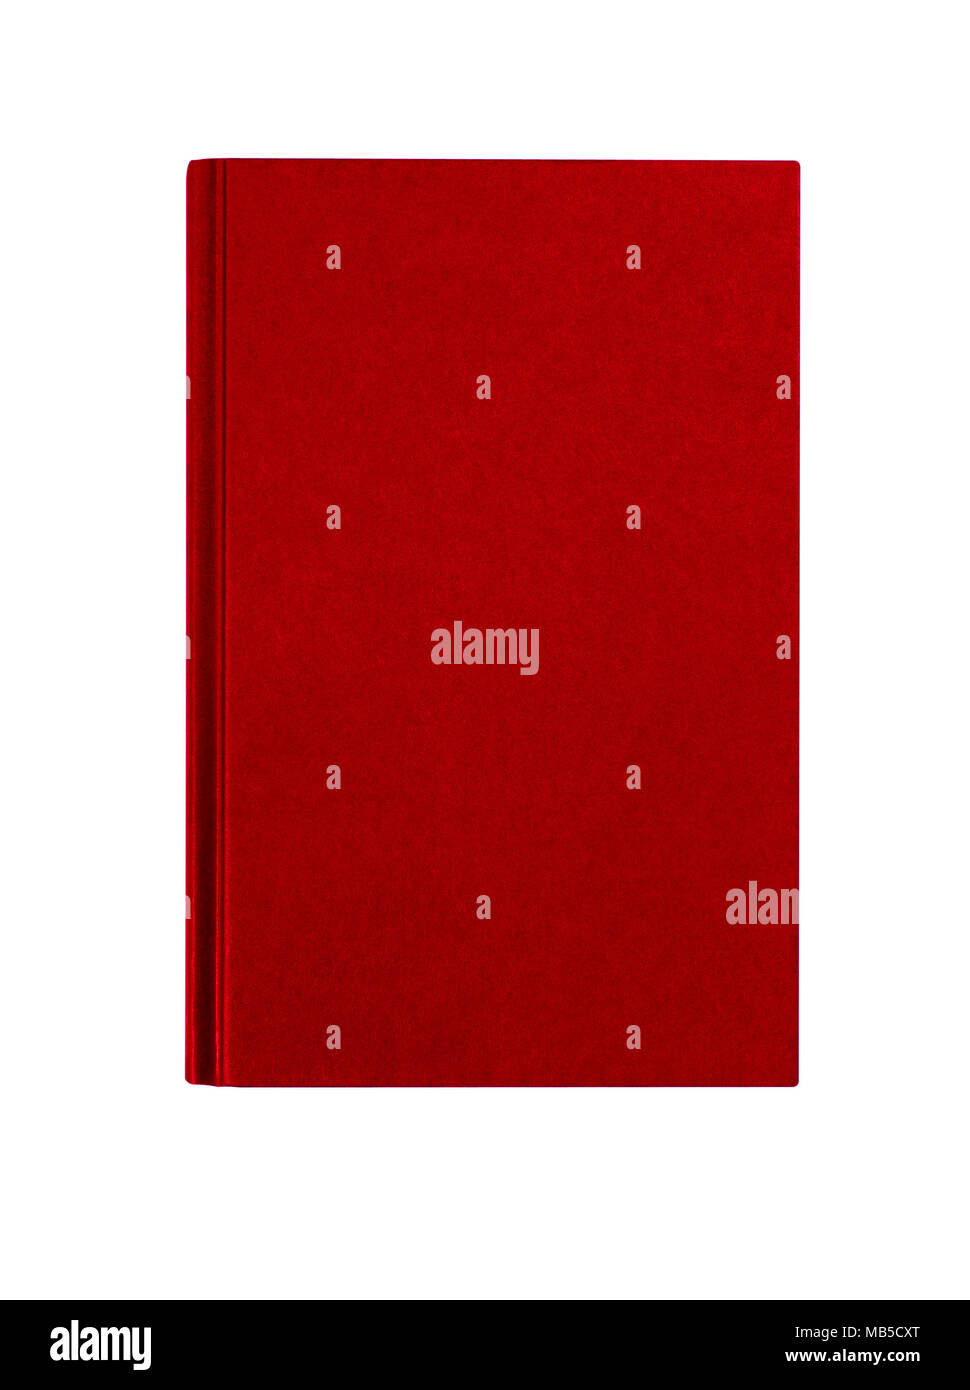 Rouge bordeaux livre relié couverture verticale verticale isolated on white Banque D'Images